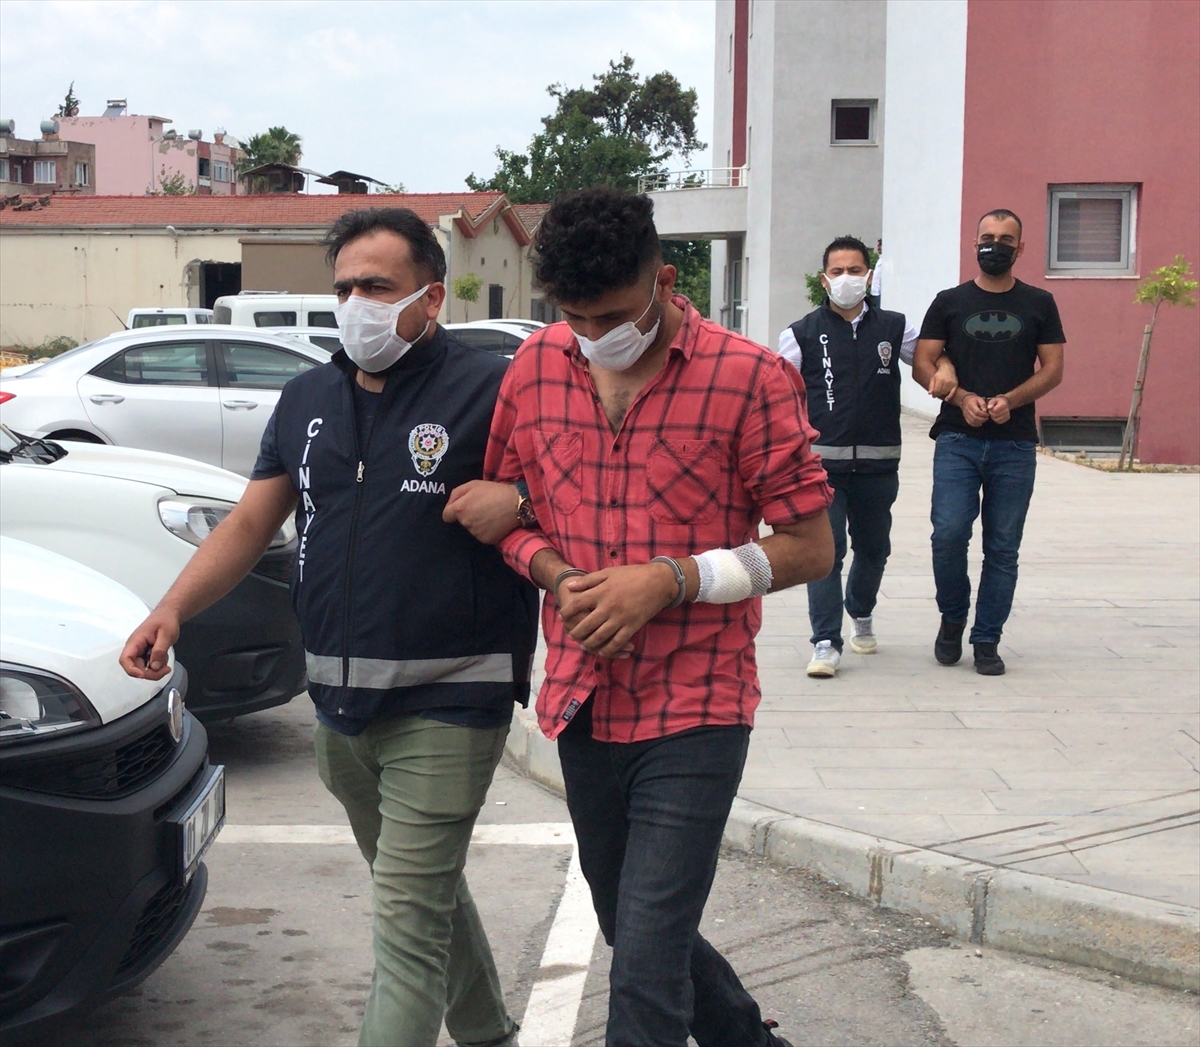 Adana'da kumar baskınında polise mukavemet gösteren 4 kişi gözaltına alındı